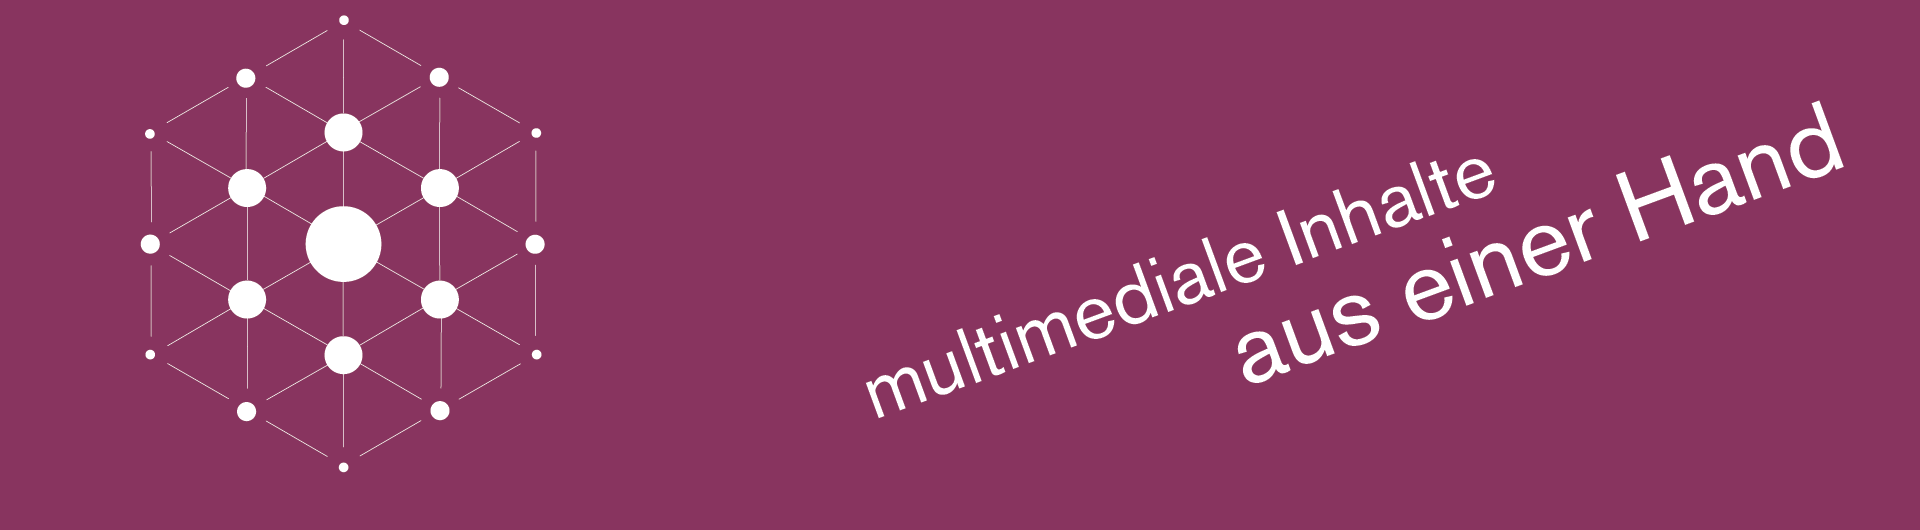 Multimedia Agentur Fabian Sude: Die Agentur für Text, Audio, Illustration, Animation und Augmented Reality